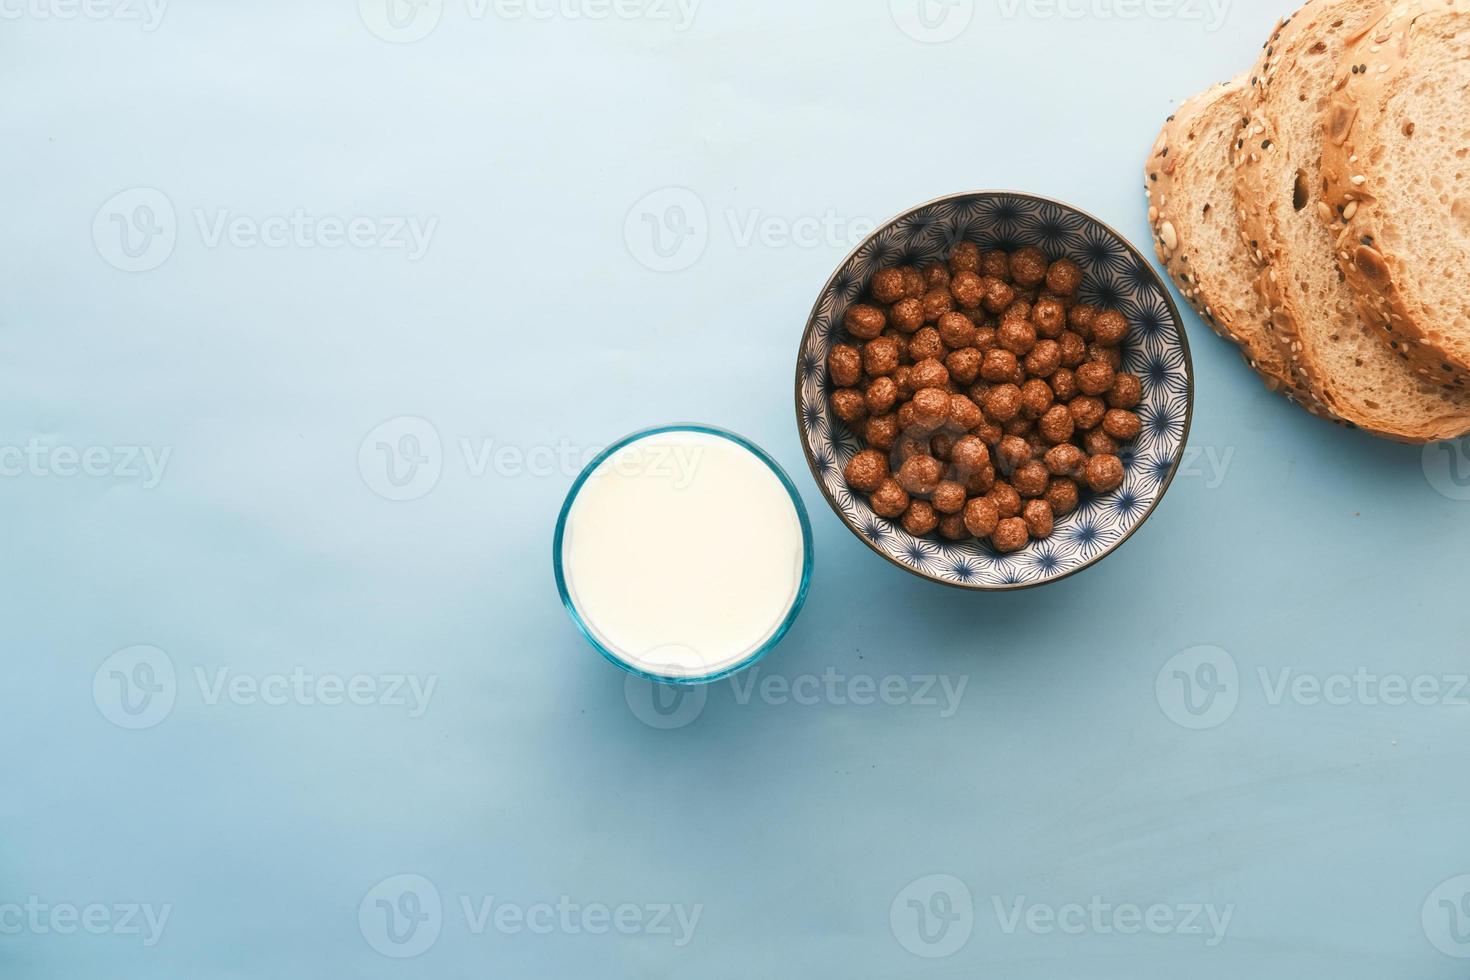 vue de dessus des flocons de maïs au chocolat, du lait et du pain sur bleu photo